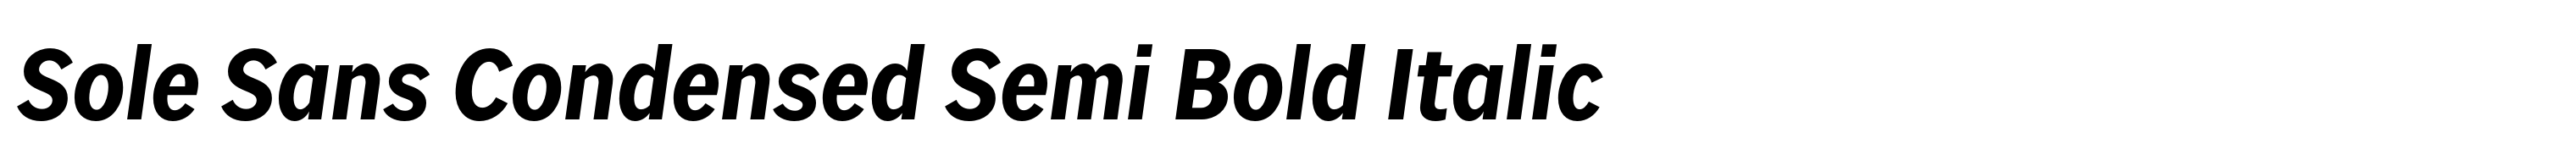 Sole Sans Condensed Semi Bold Italic